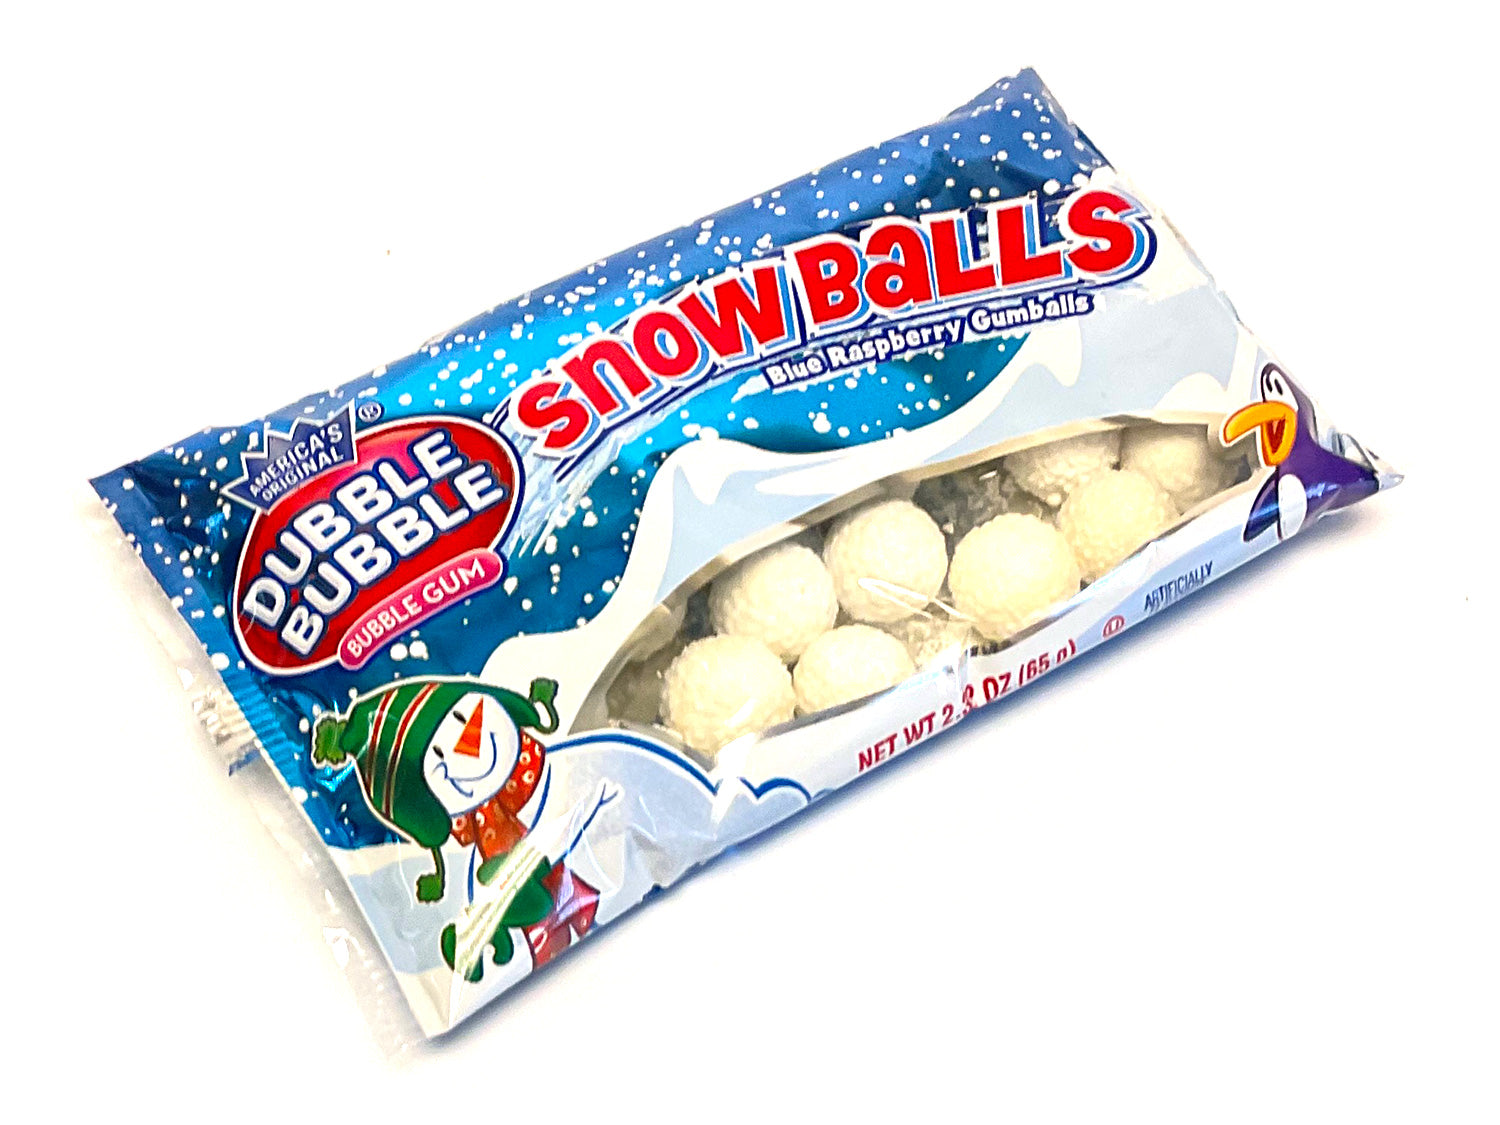 Dubble Bubble Snowballs - 2.32 oz bag